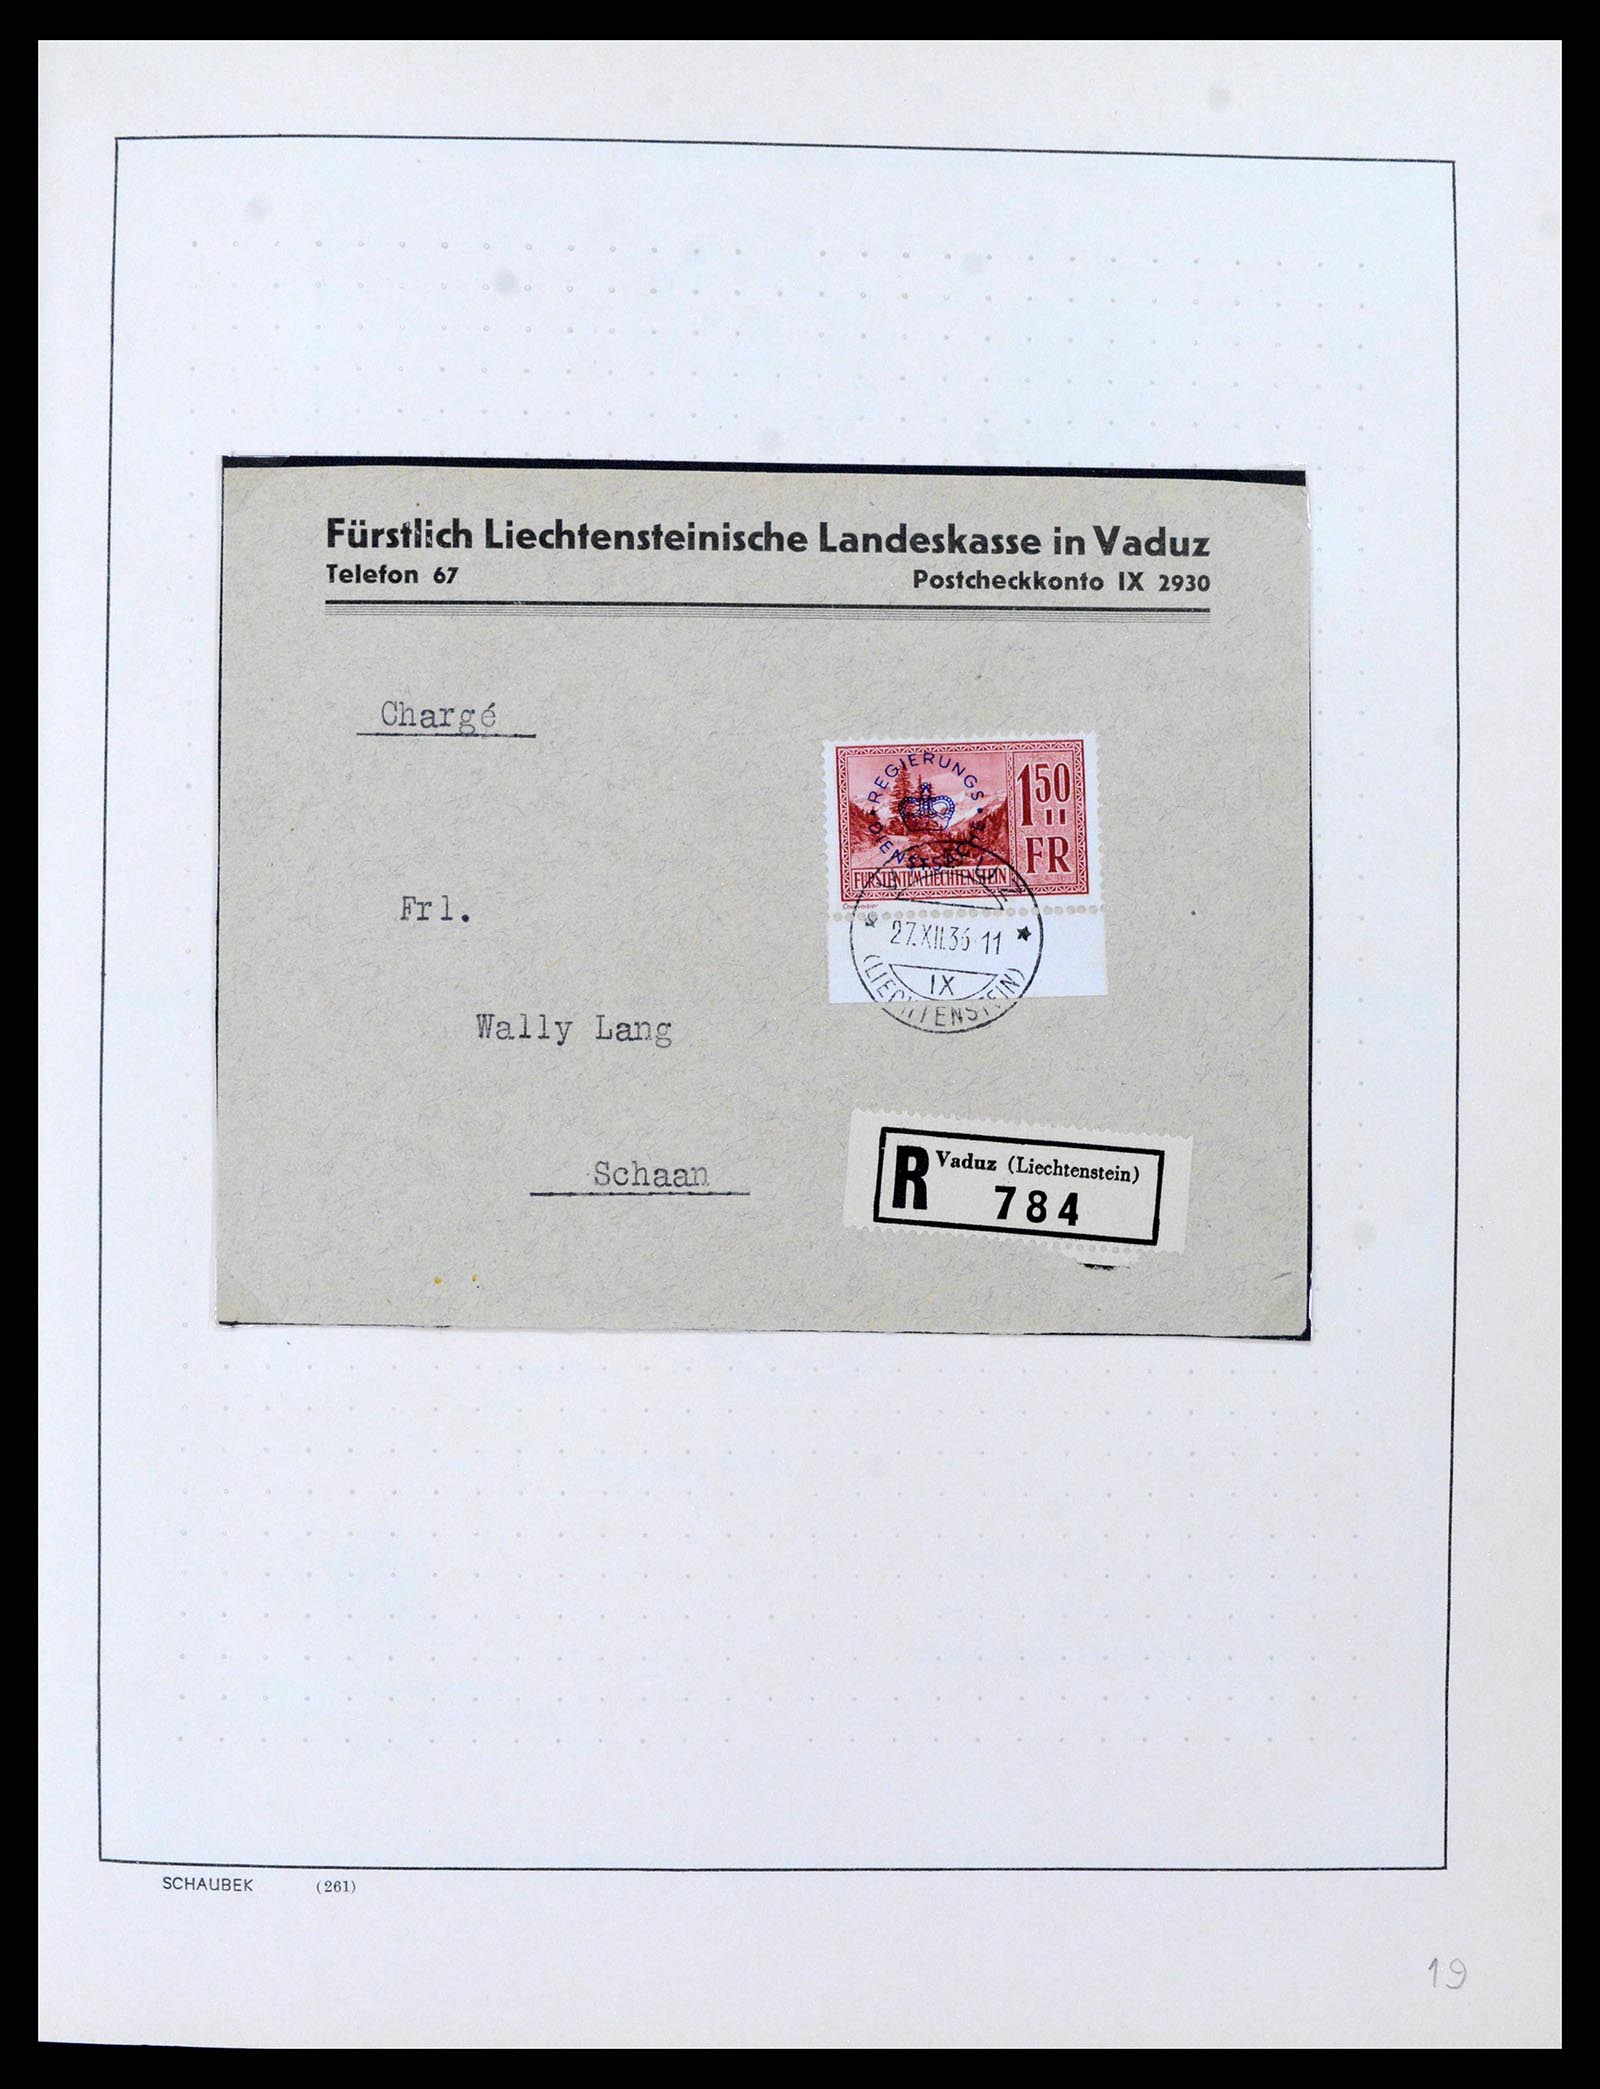 38204 0016 - Stamp collection 38204 Liechtenstein service covers 1932-1989.